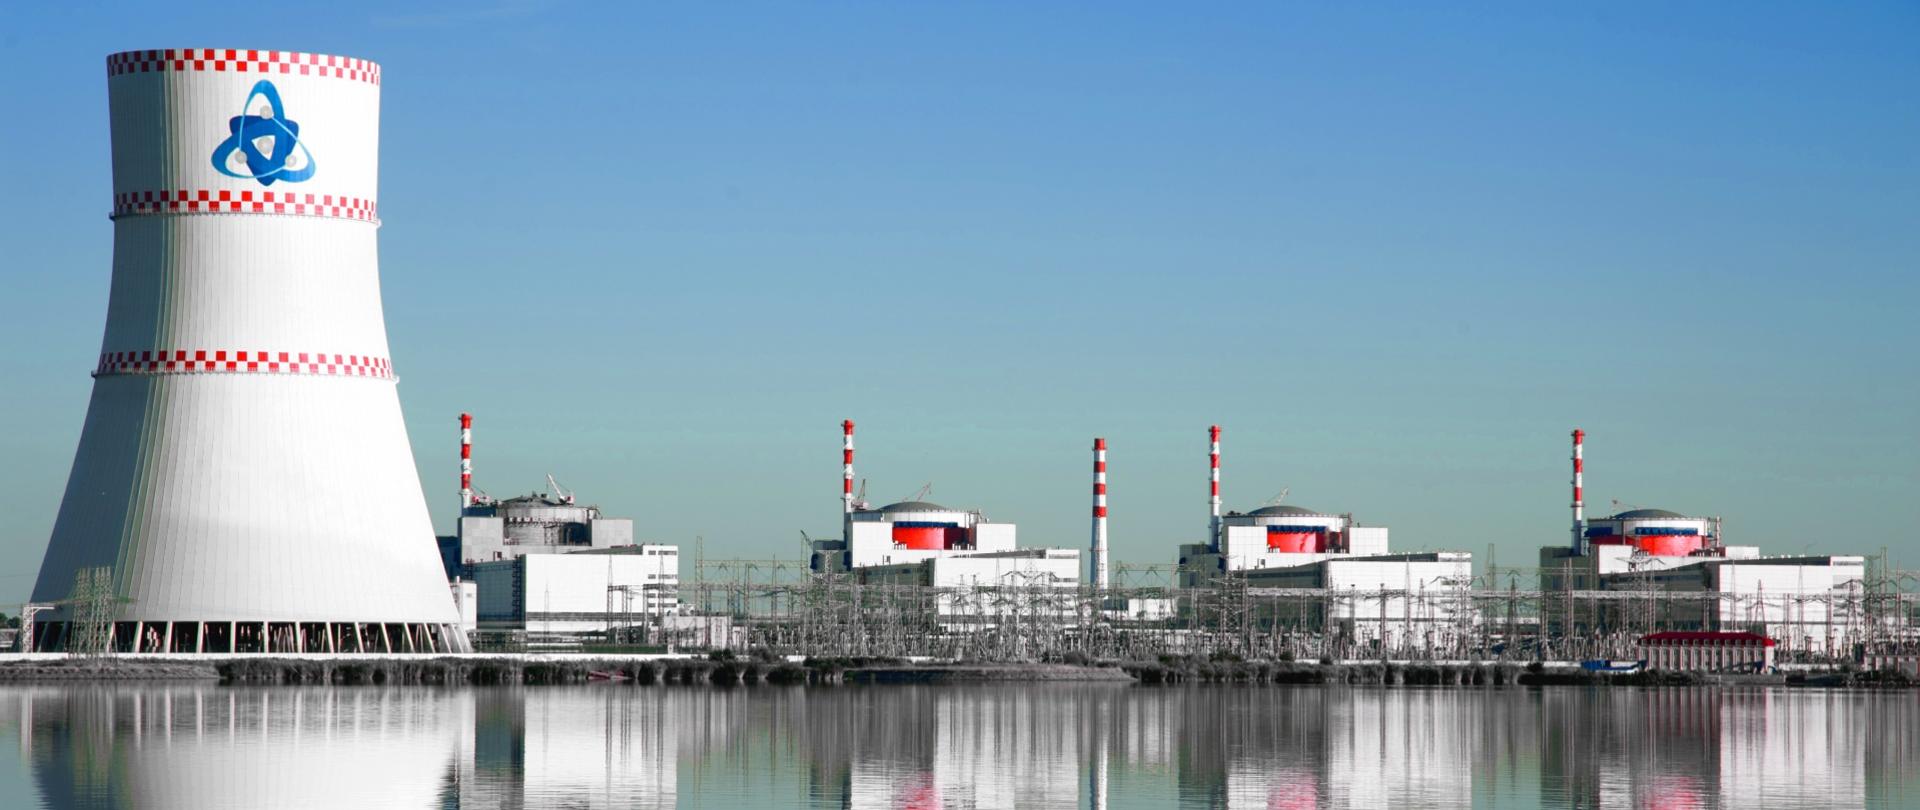 Elektrownia jądrowa w Rostowie - na pierwszym planie tafla wody. W tle cztery reaktory jądrowe oraz komin chłodniczy elektrowni jądrowej.